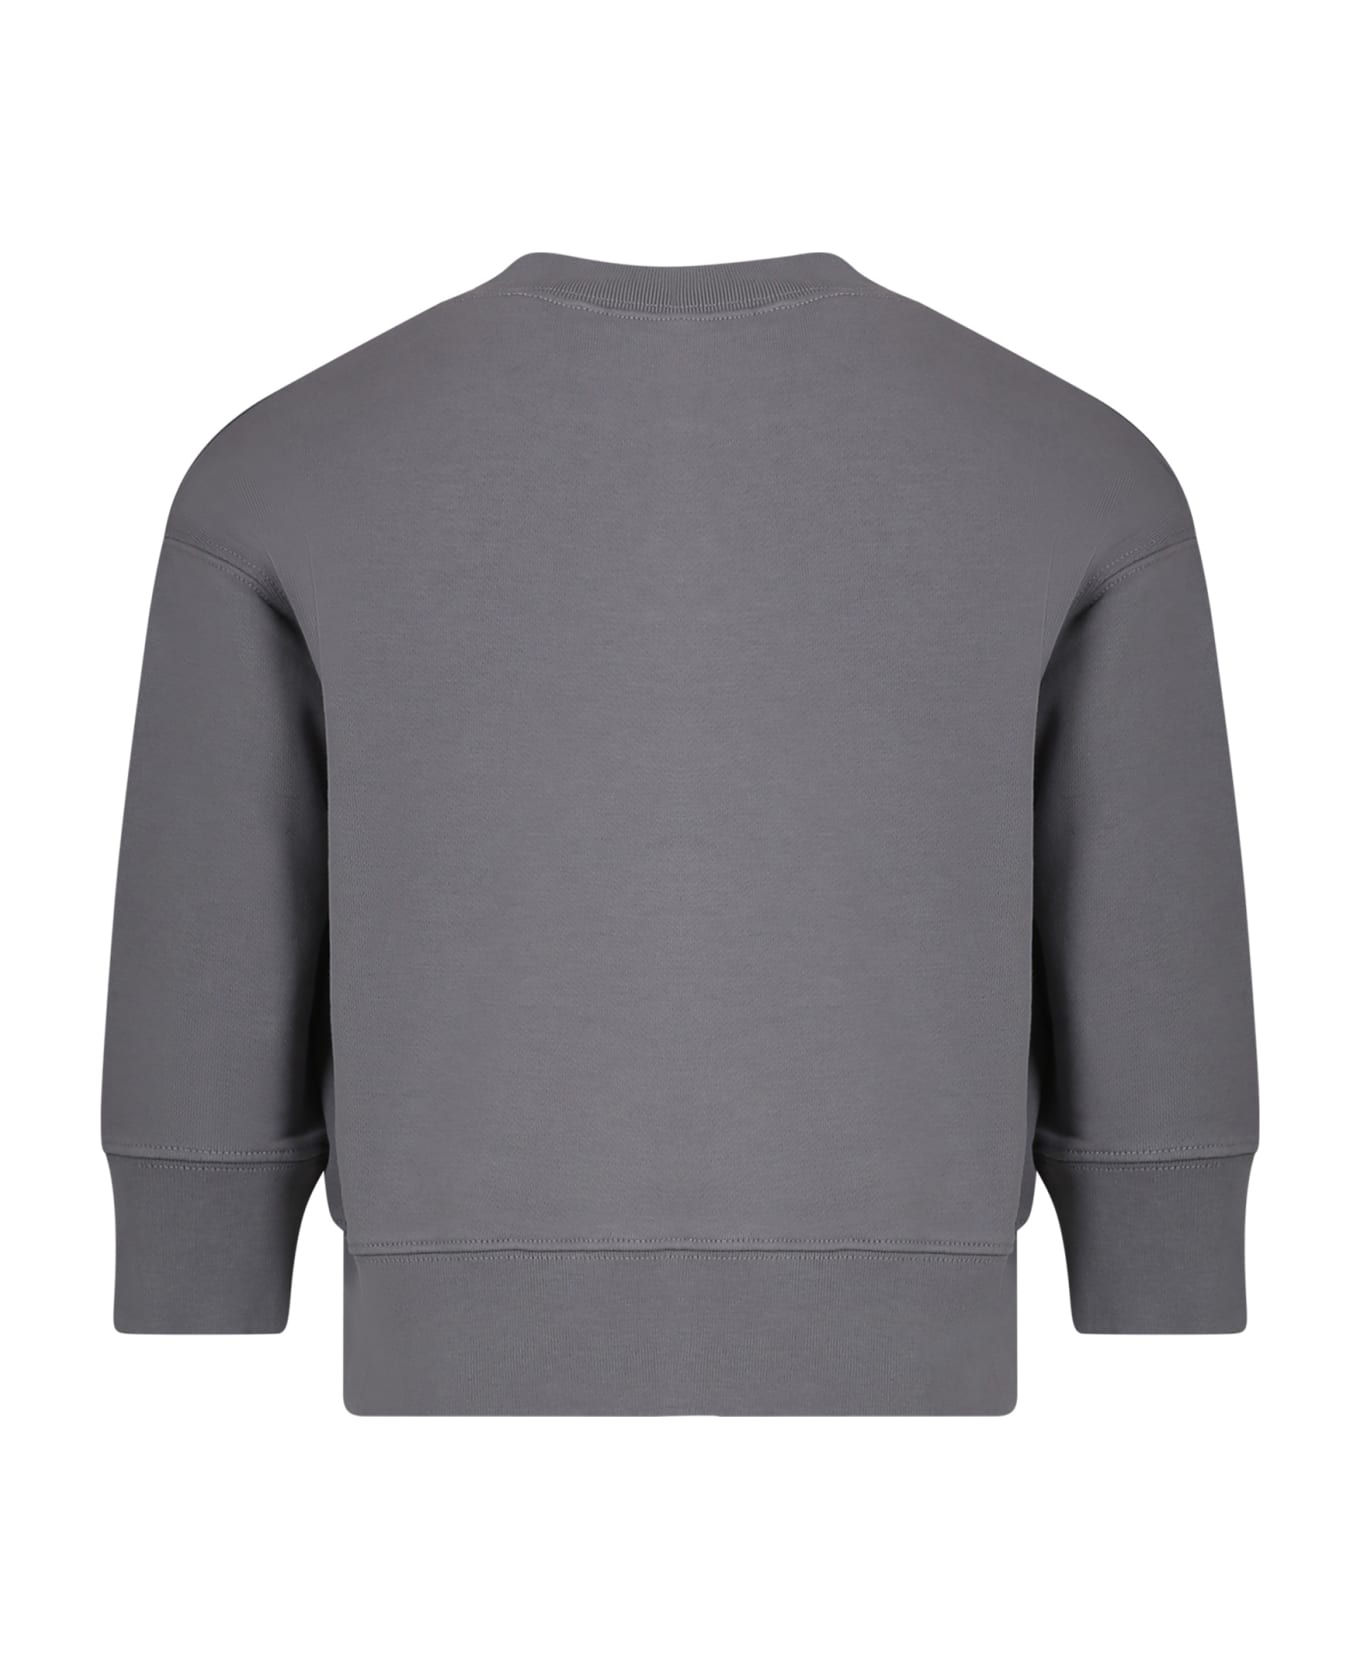 Palm Angels Grey Sweatshirt For Boy With Logo - Grey